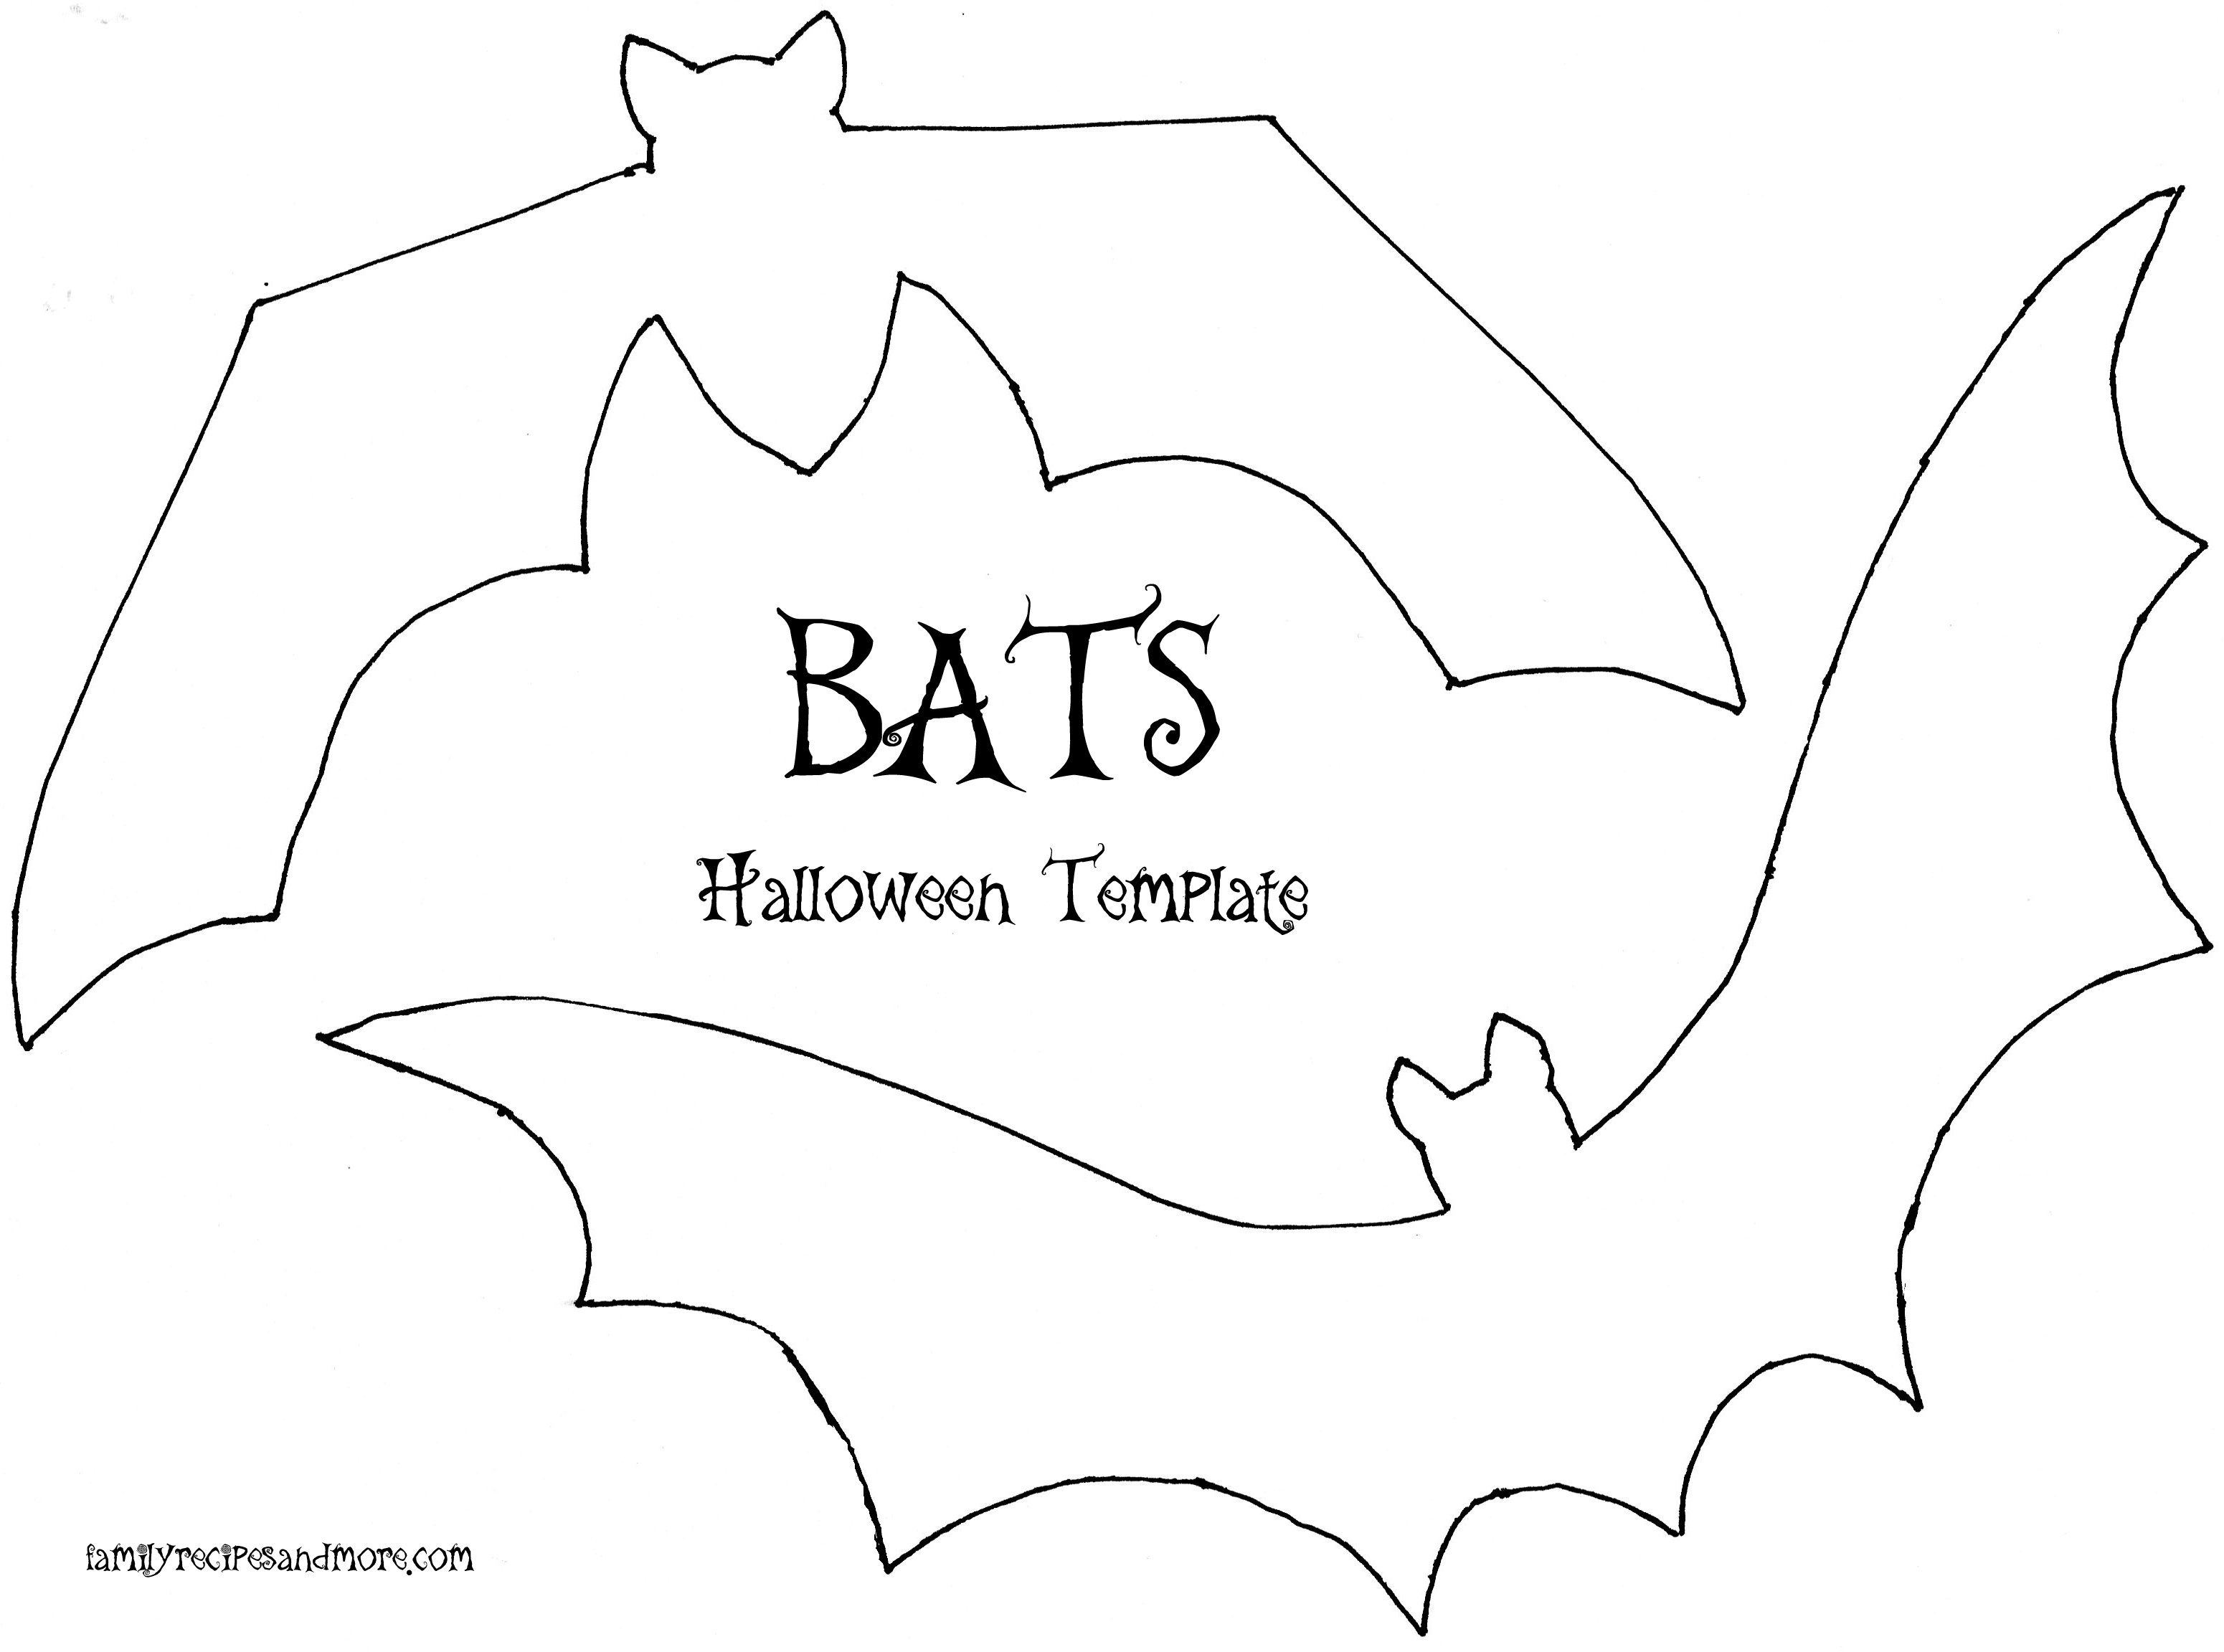 halloween-bat-template-clip-art-library